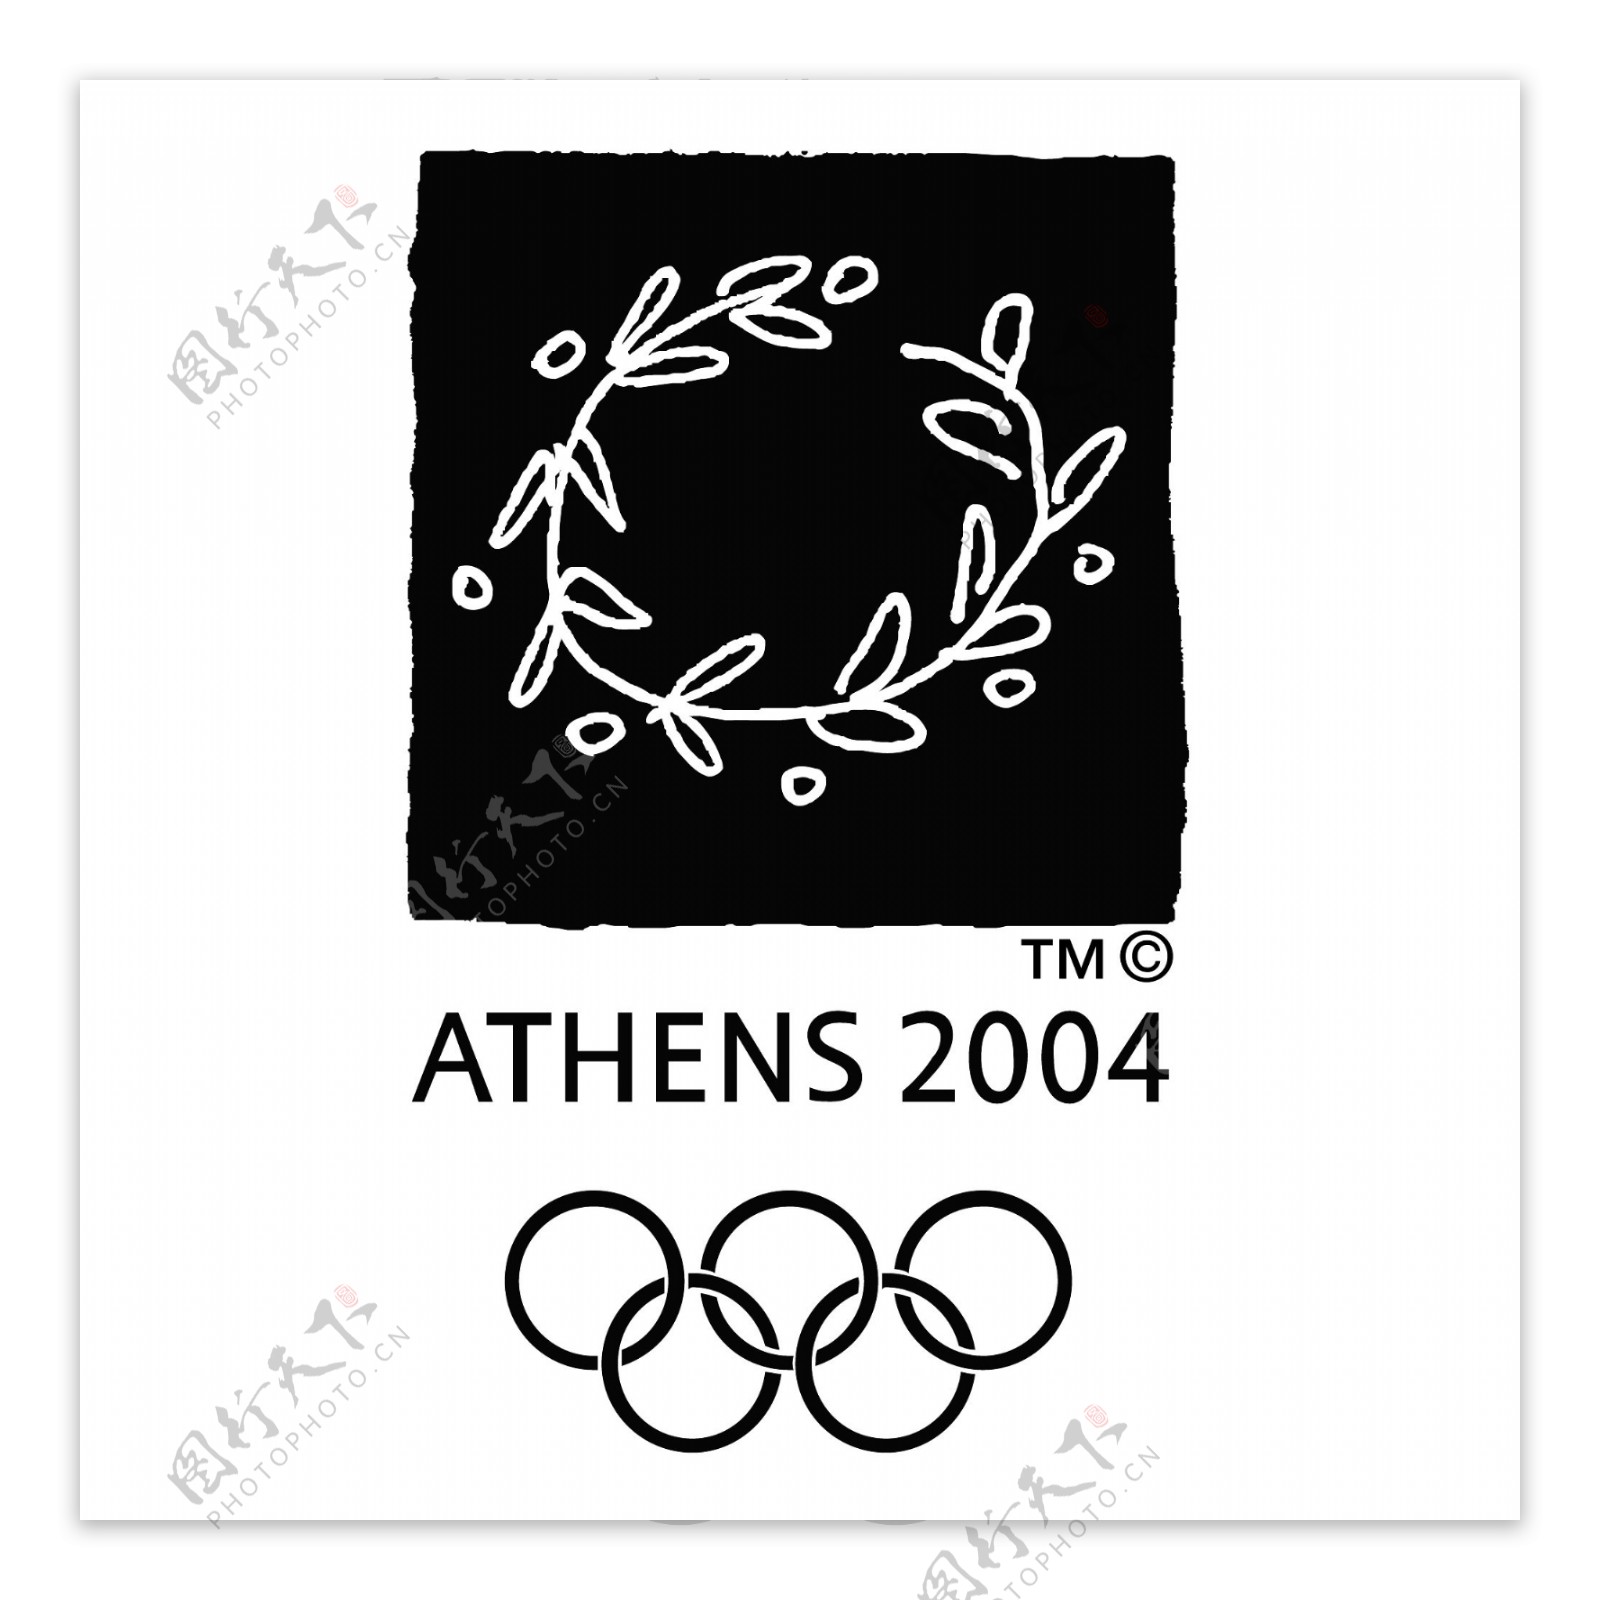 2004雅典奥运会0